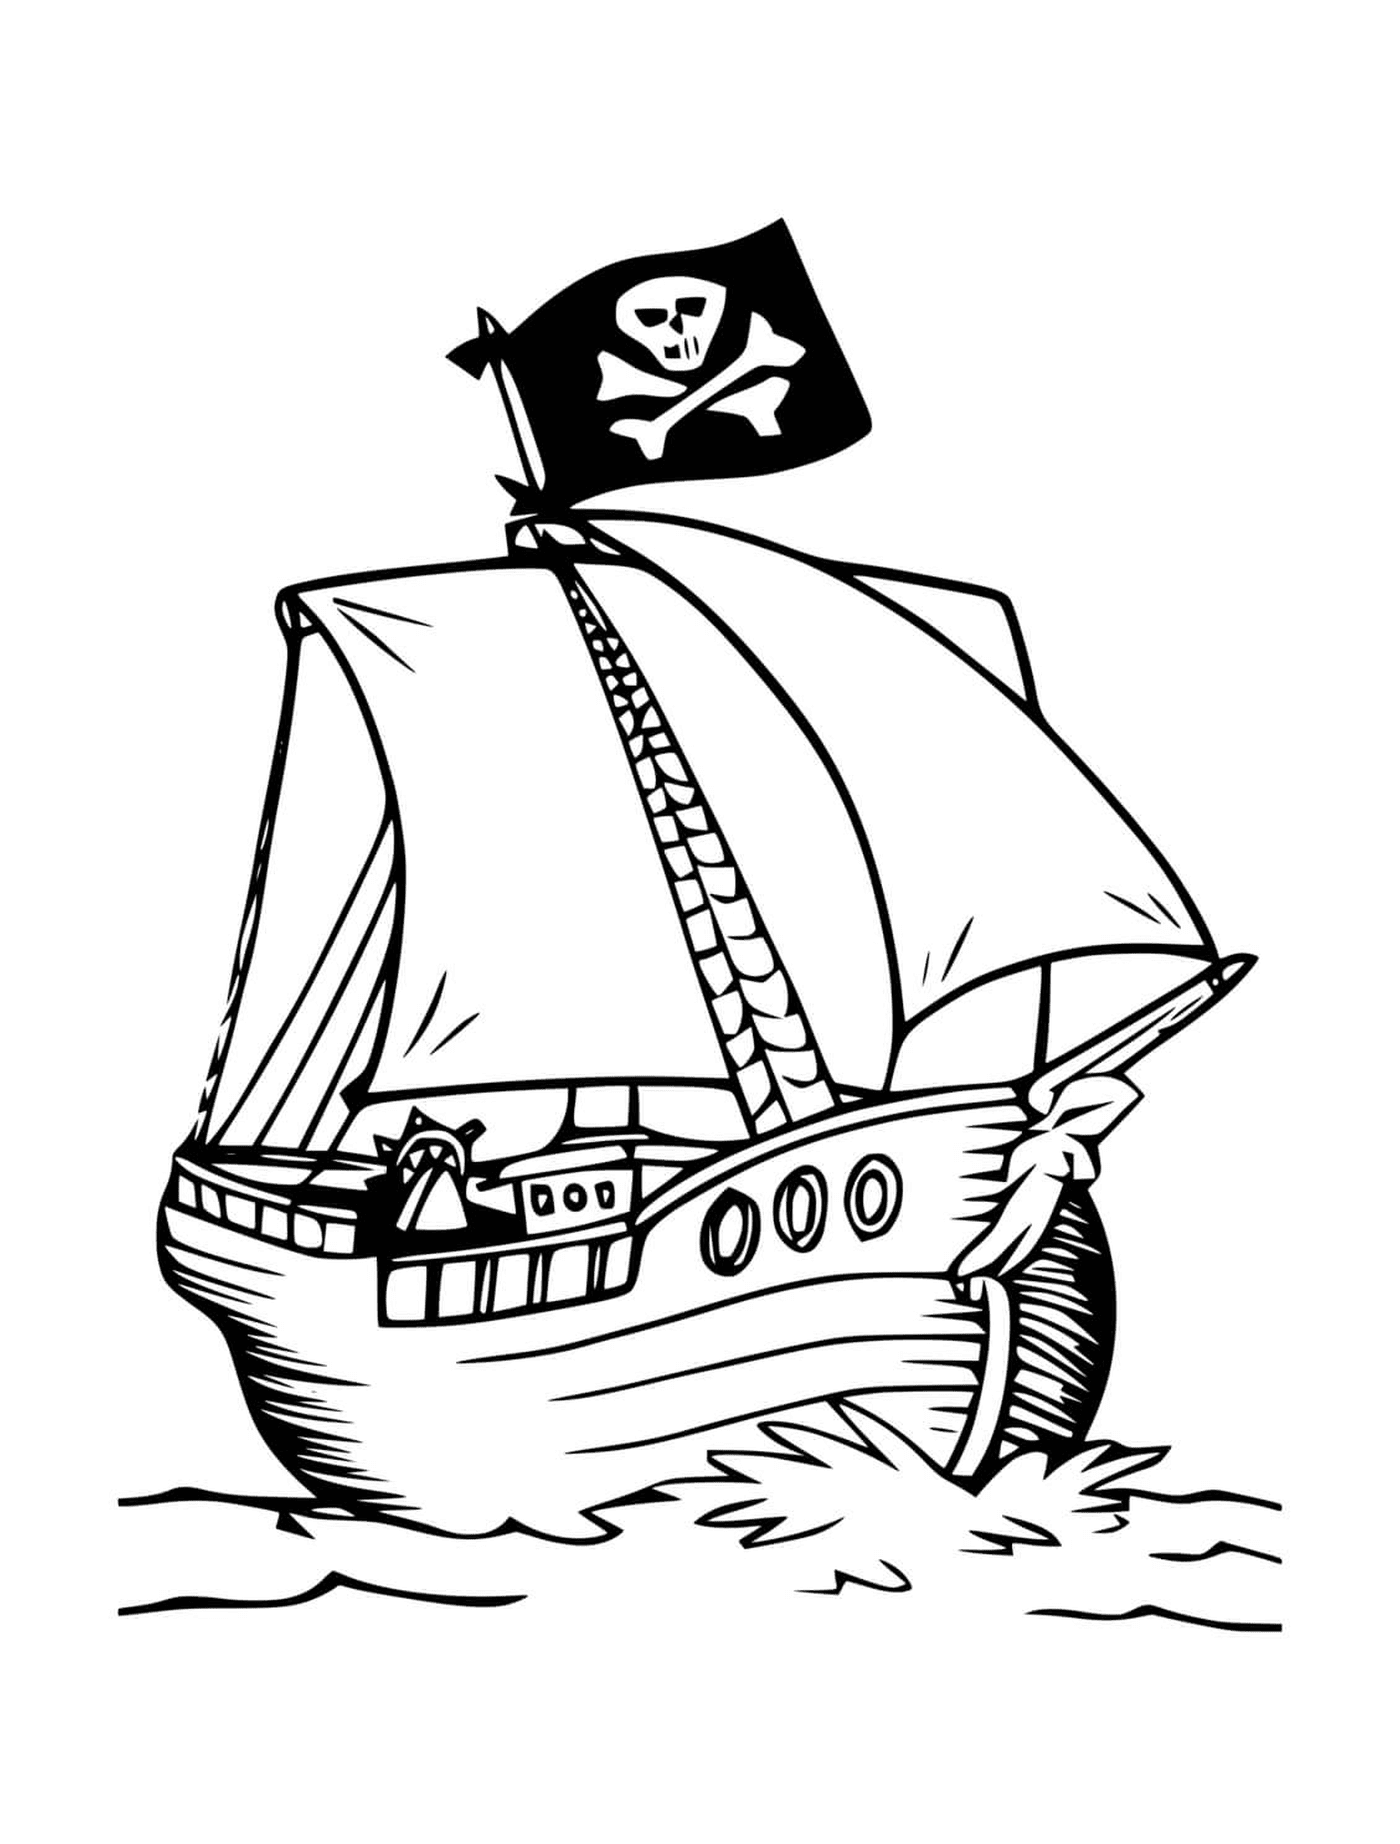   Pirate, bateau aventurier 